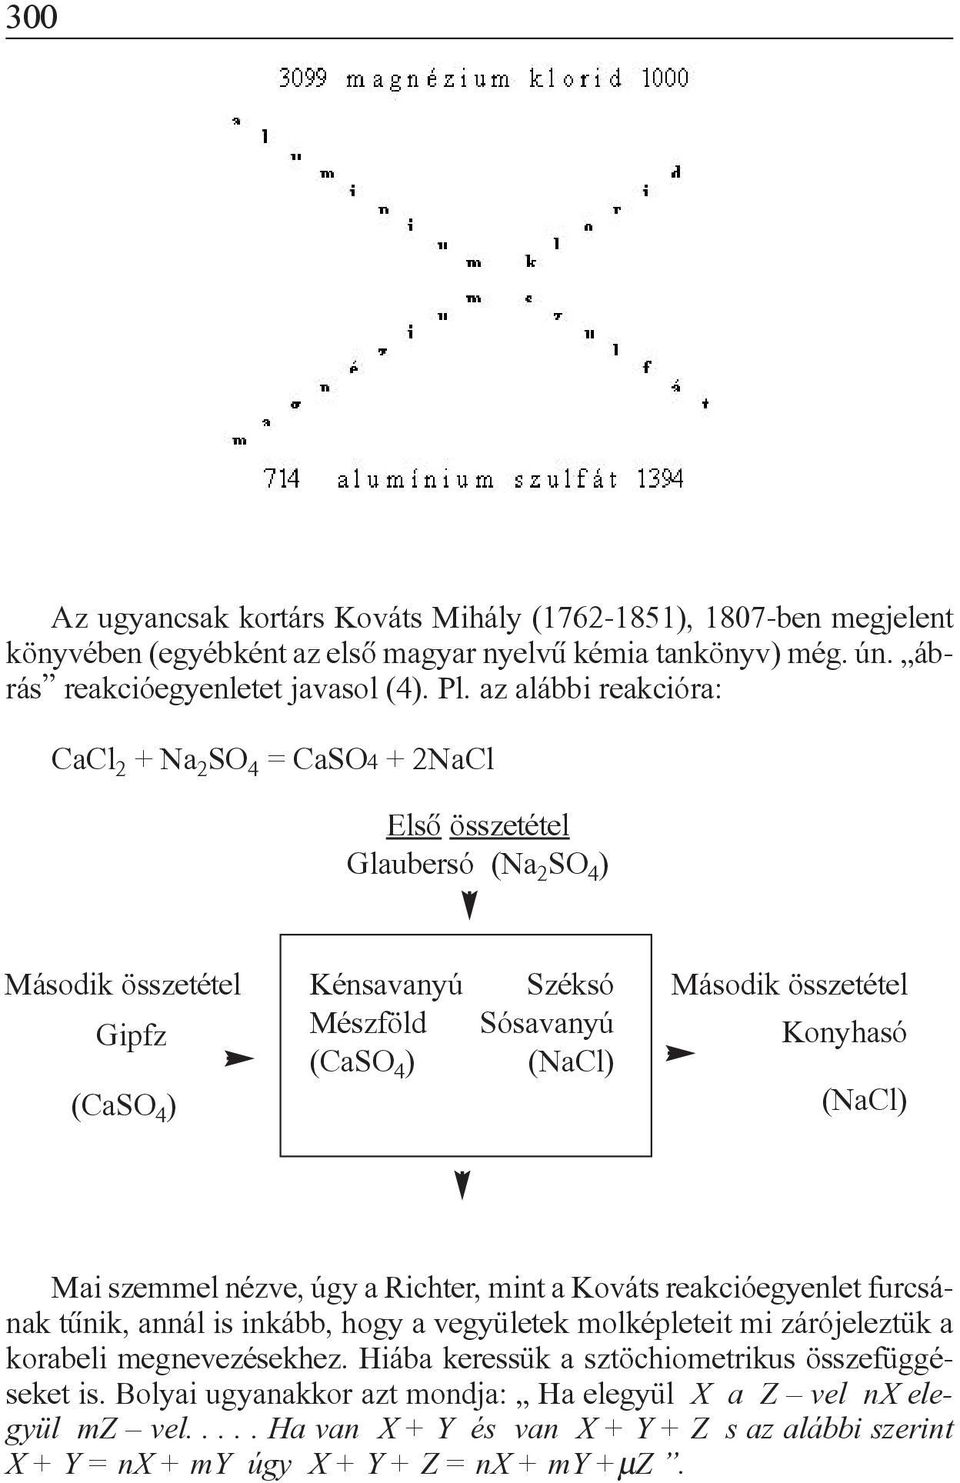 Konyhasó (CaSO 4 ) (NaCl) Mai szemmel nézve, úgy a Richter, mint a Kováts reakcióegyenlet furcsának tûnik, annál is inkább, hogy a vegyületek molképleteit mi zárójeleztük a korabeli megnevezésekhez.